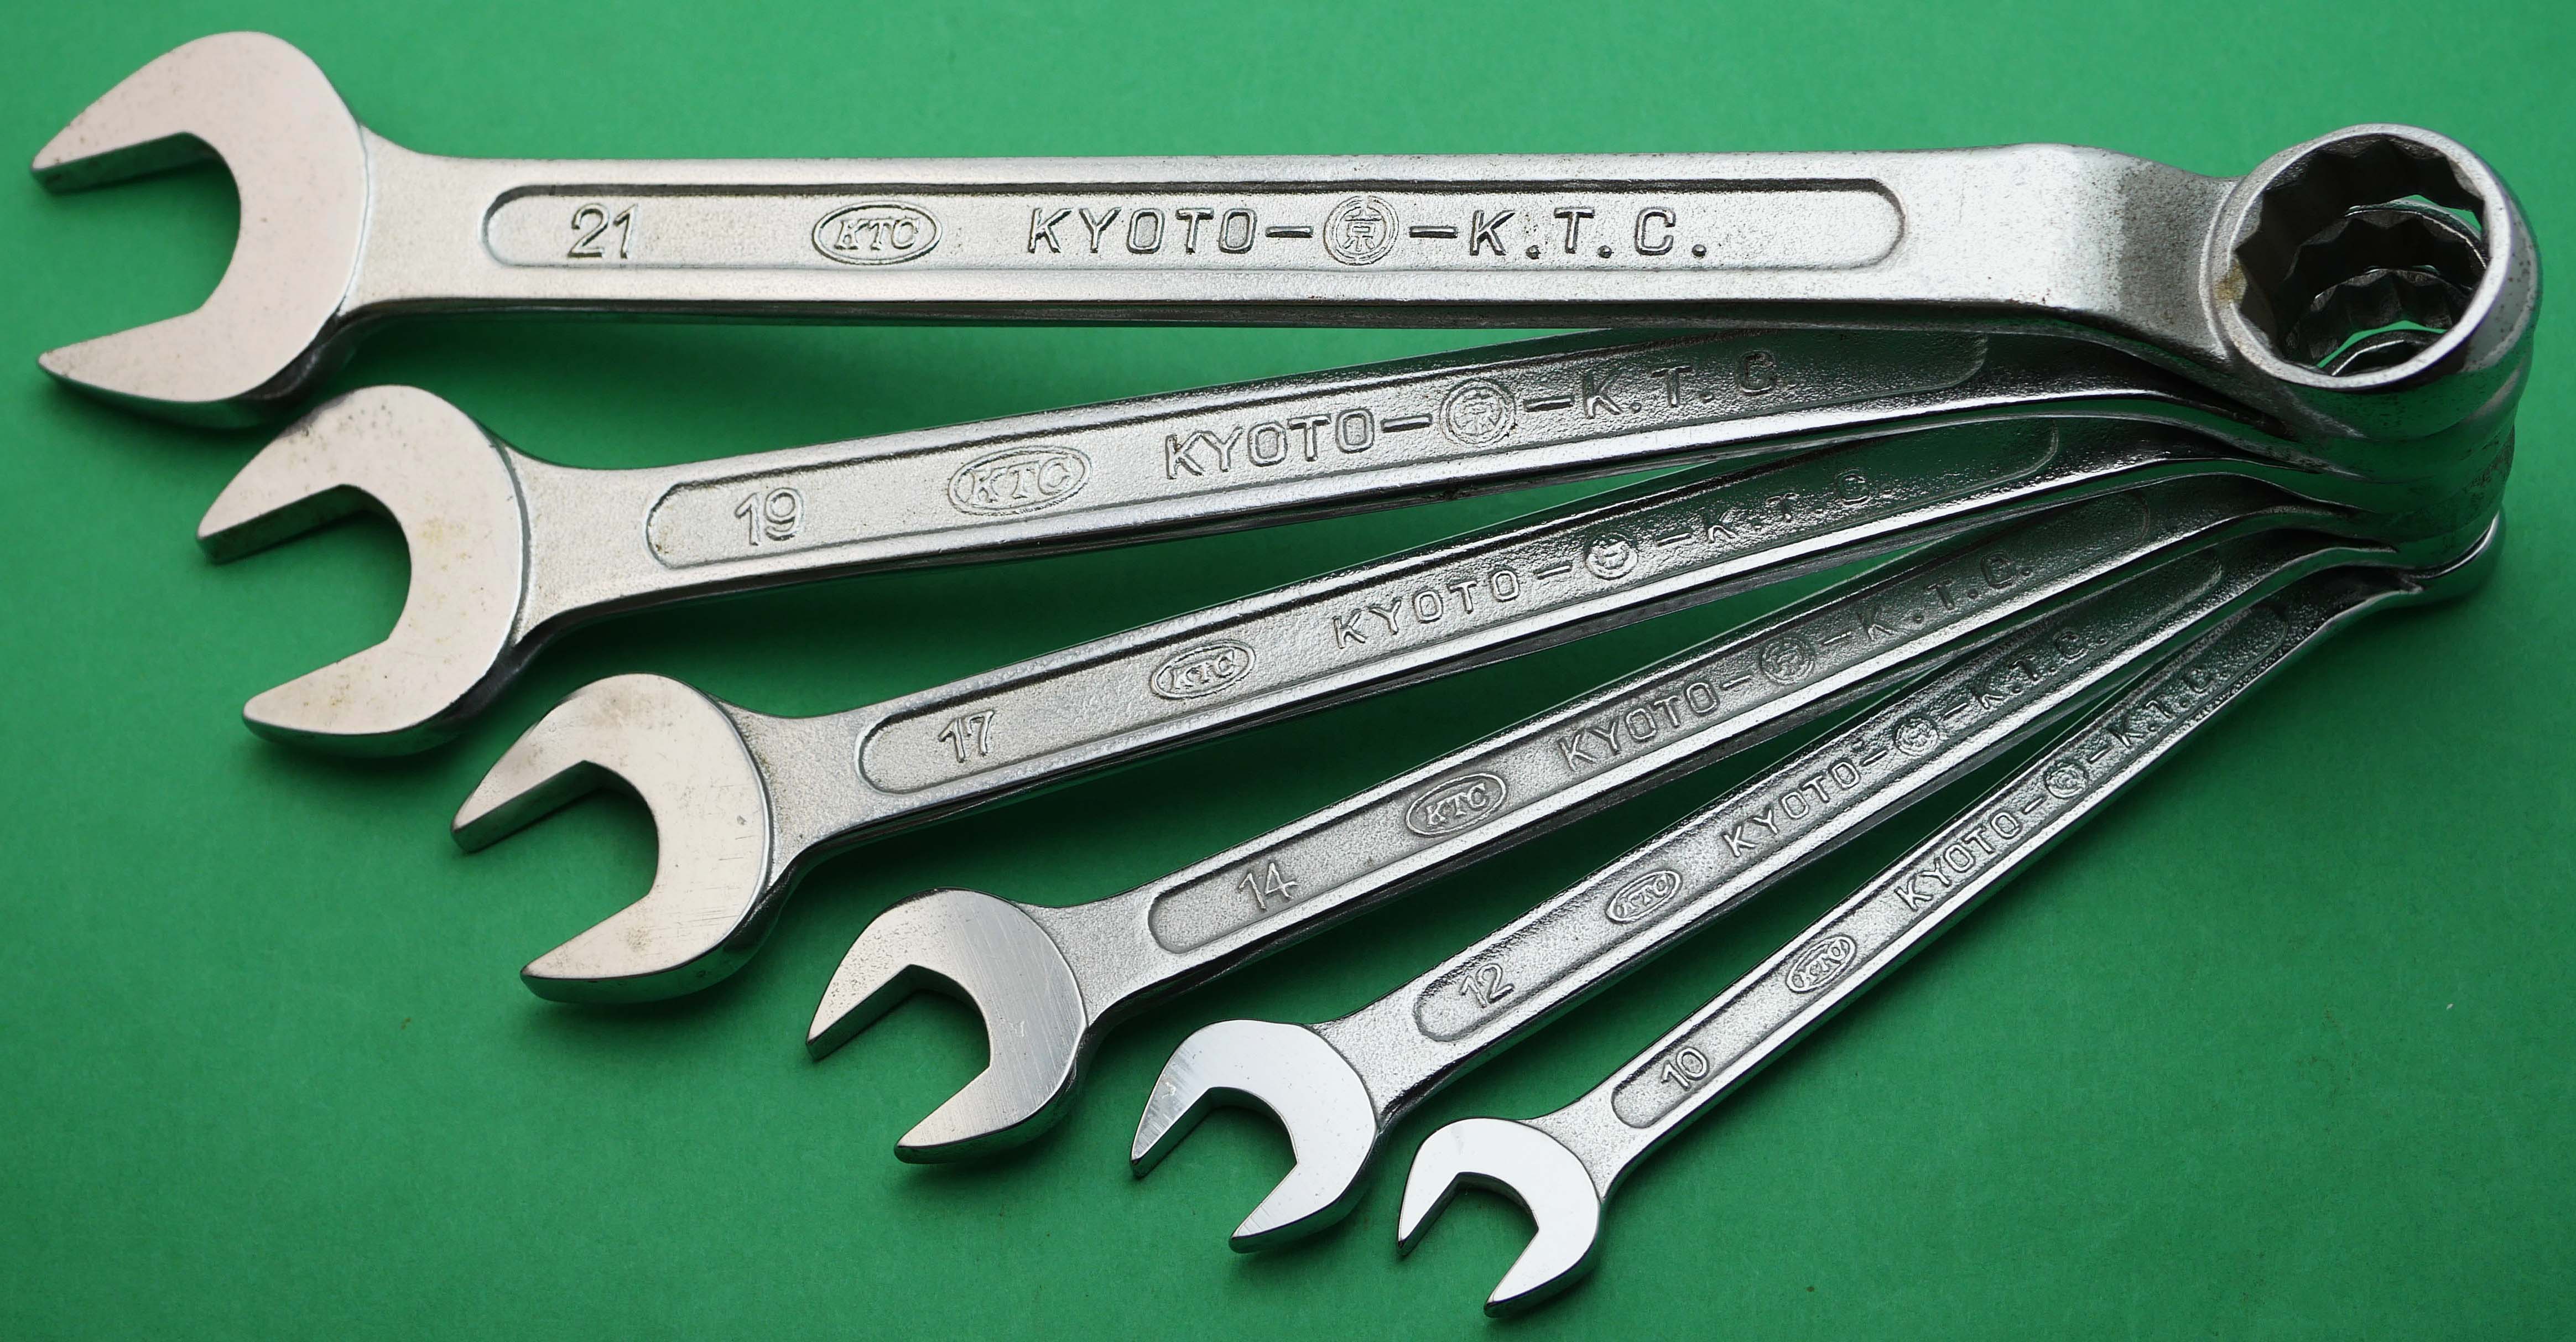 京都機械工具/KTC コンビネーションレンチ 36mm MS236(3077021) JAN